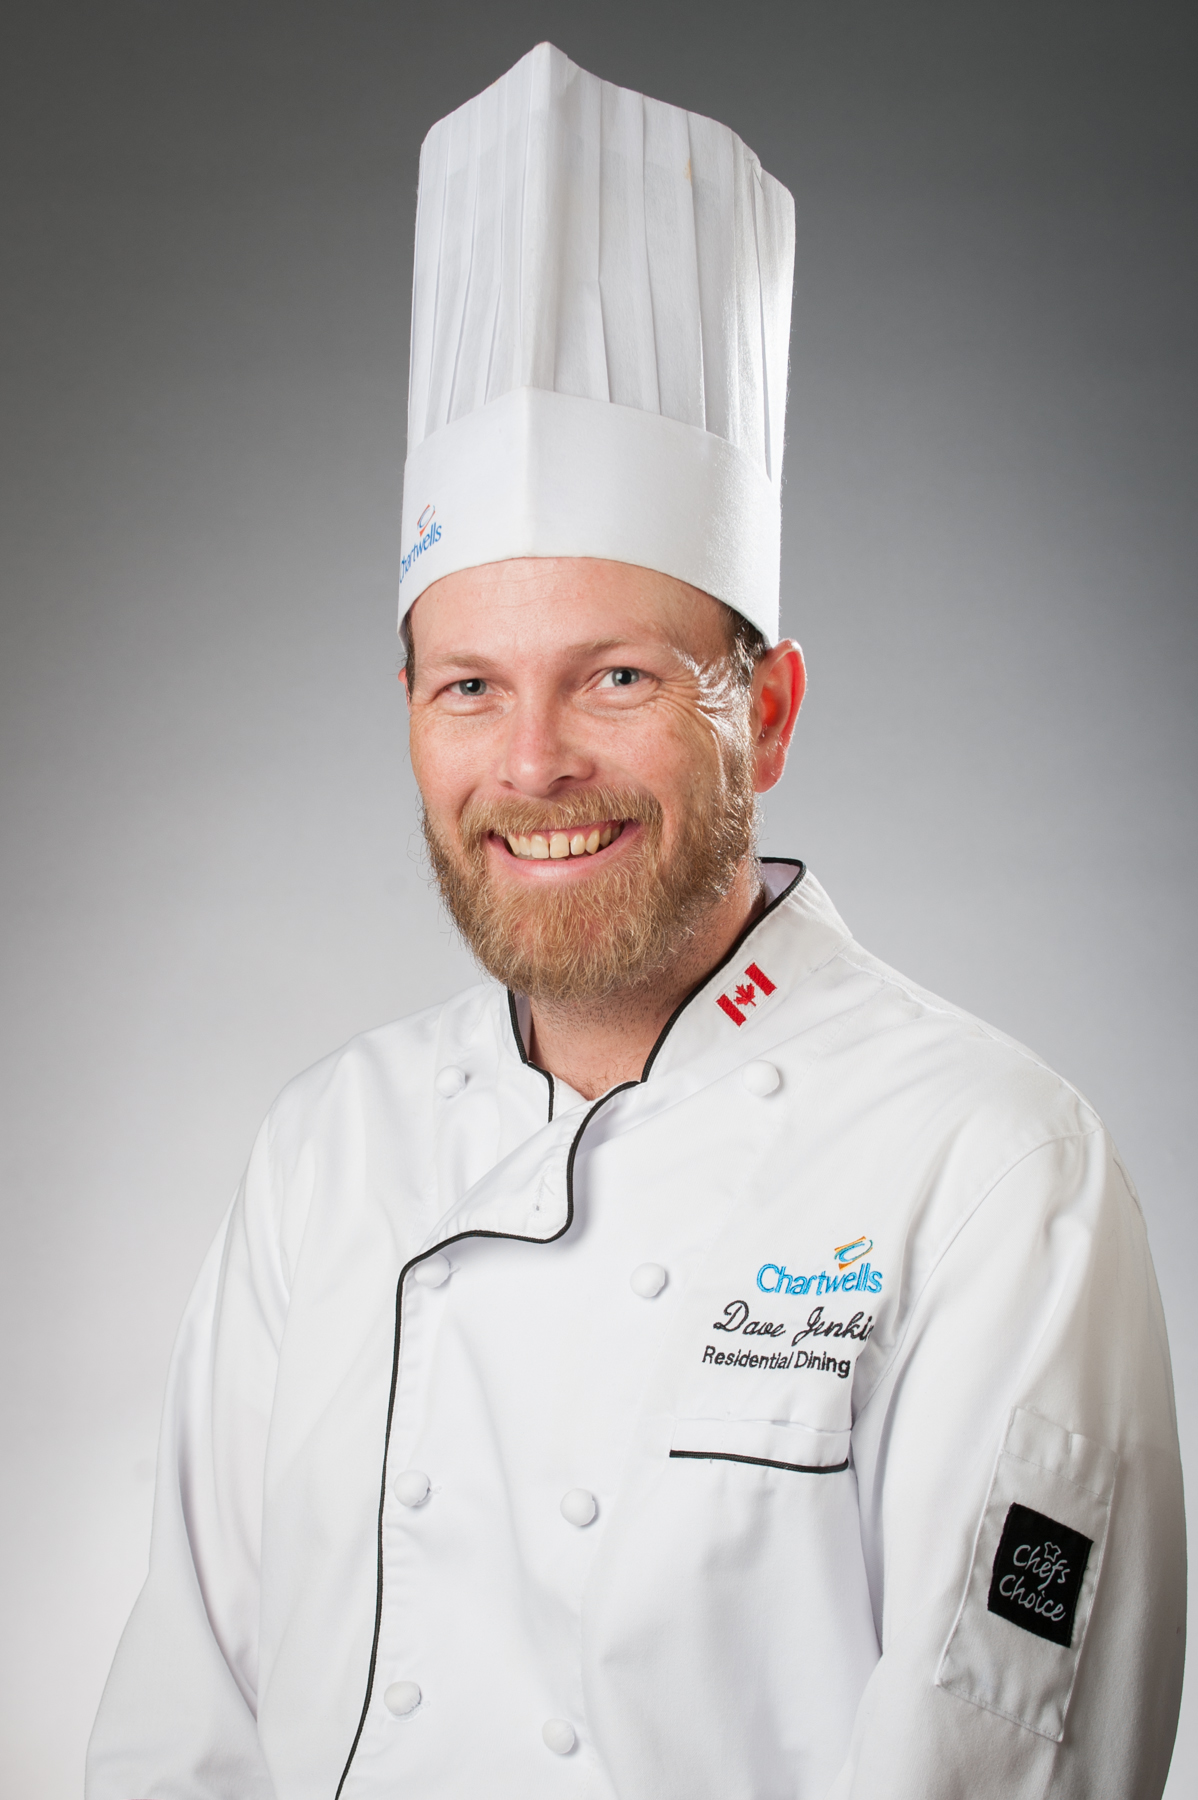 David Jenkins - Executive Chef